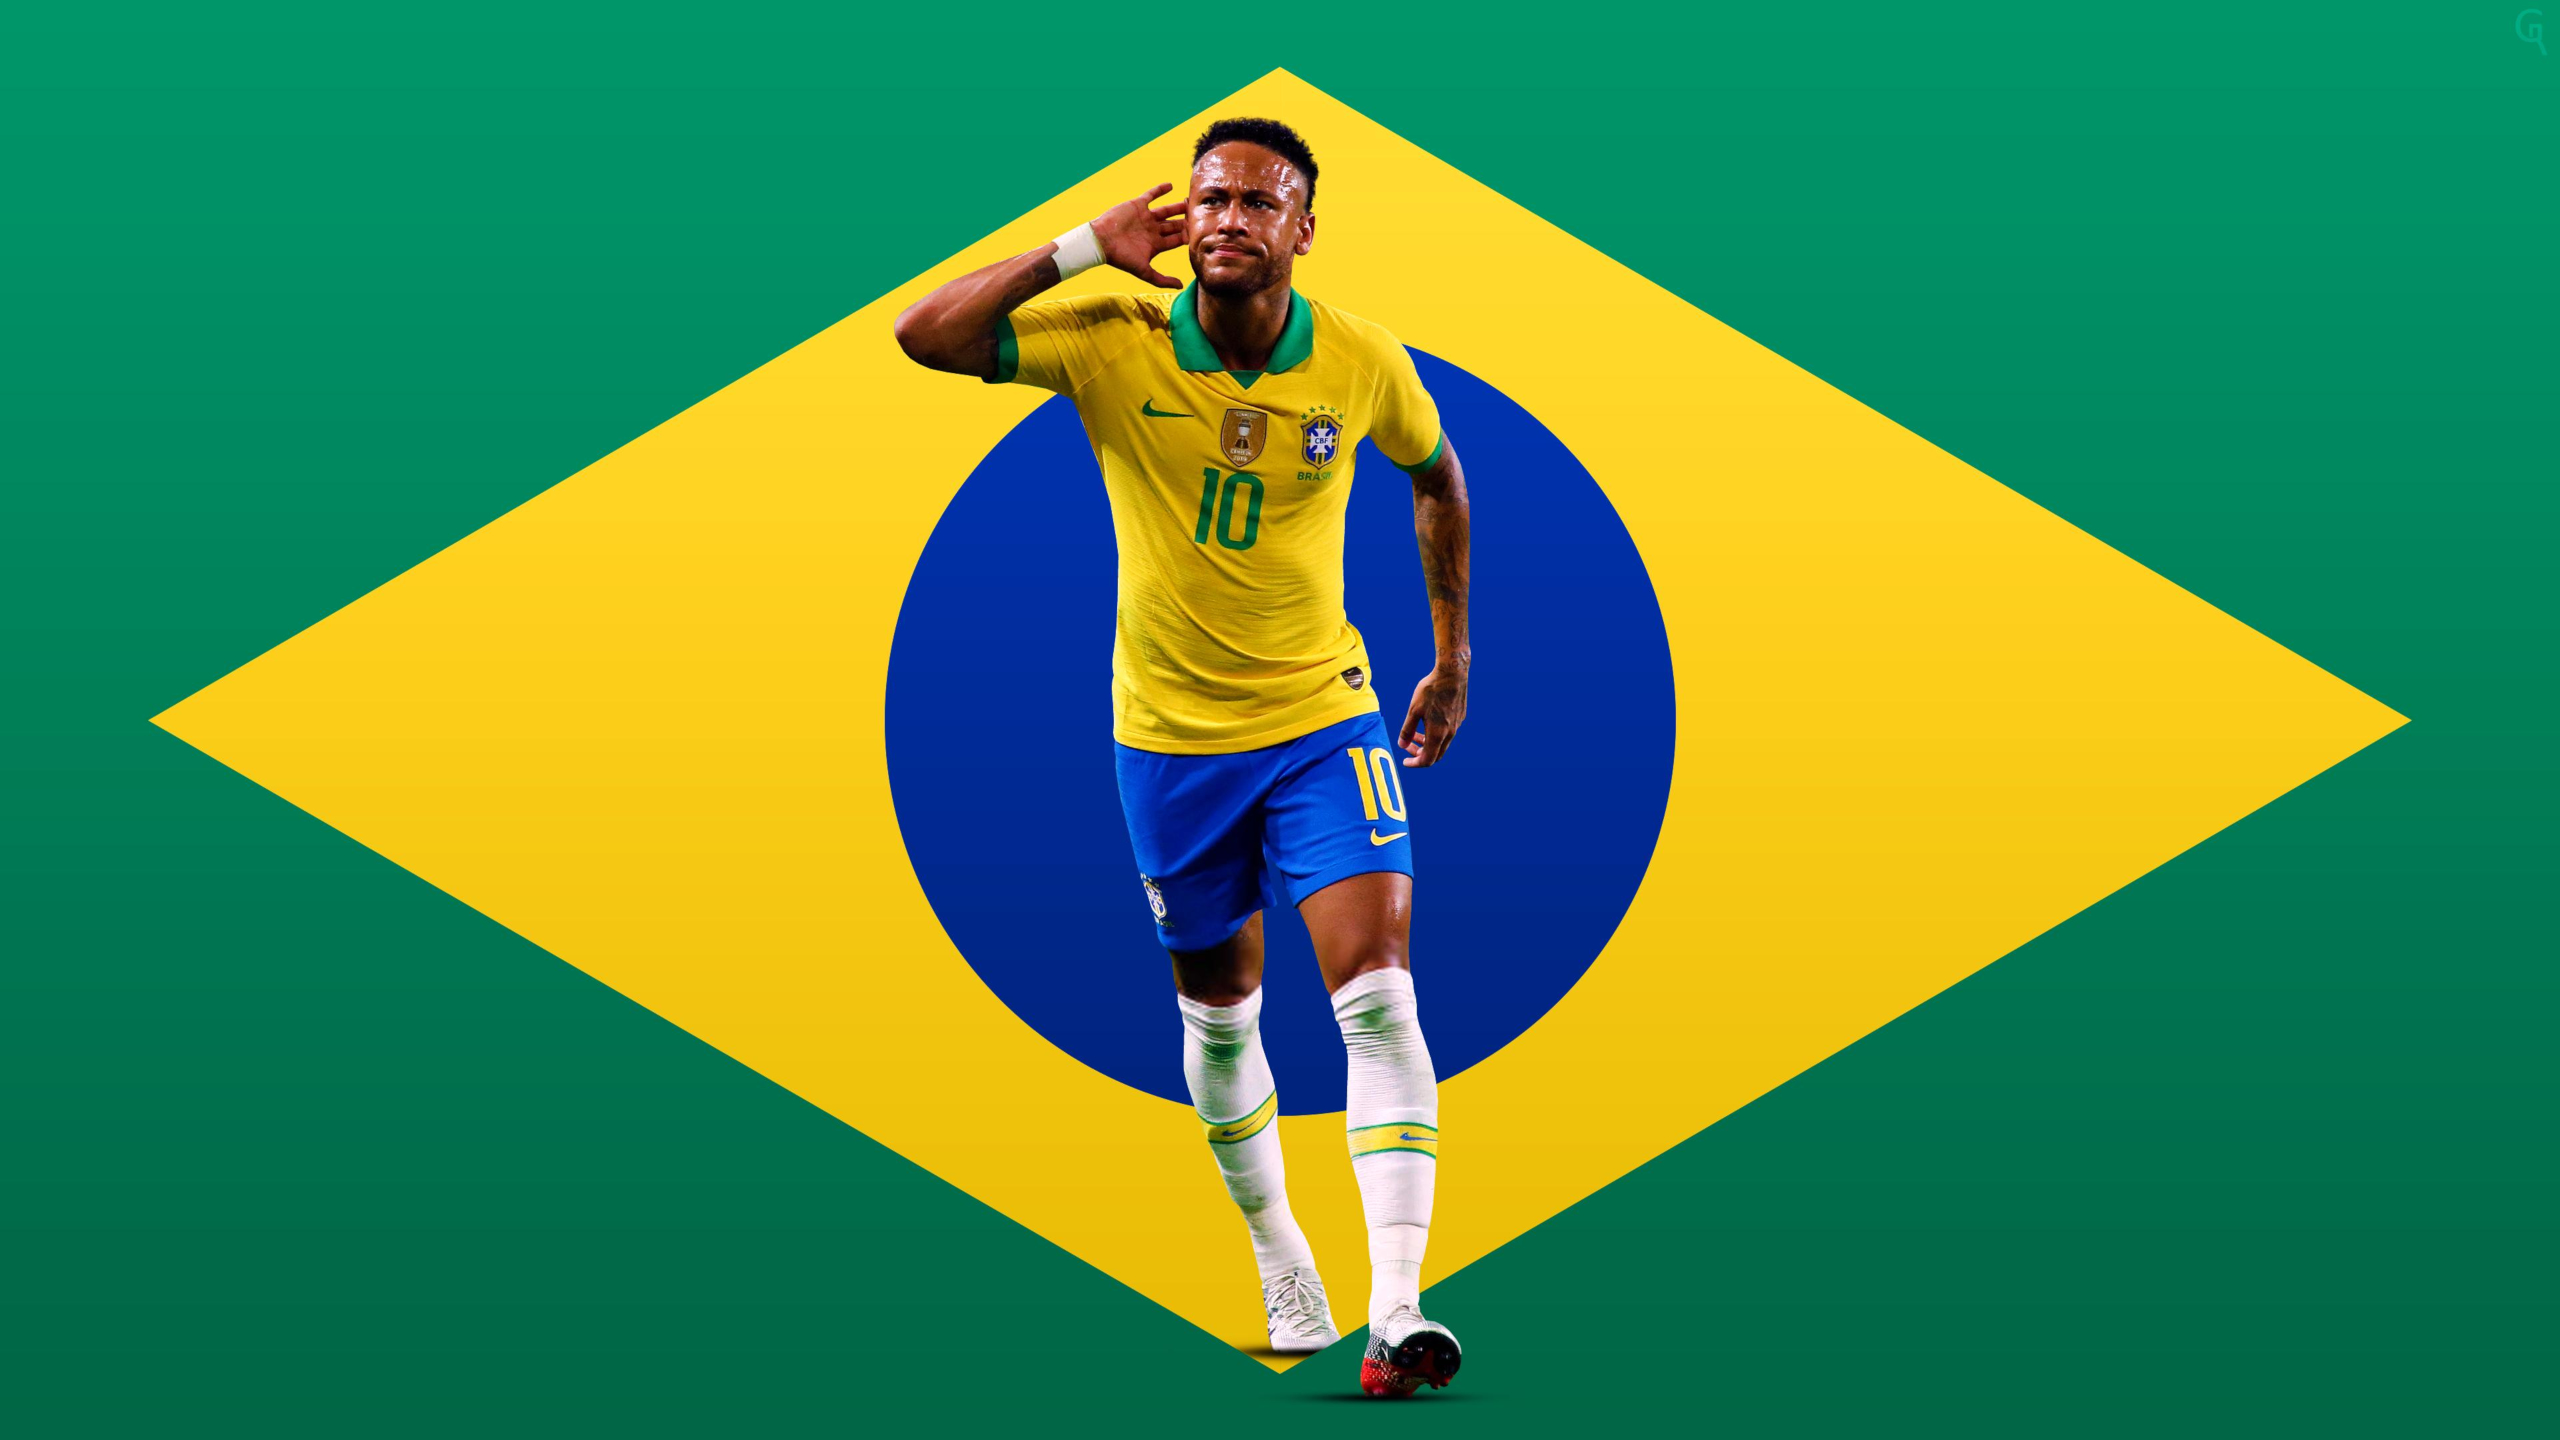 Hình nền World Cup Brazil 2014  Wallpaper bóng đá đẹp cho máy tính laptop   VFOVN